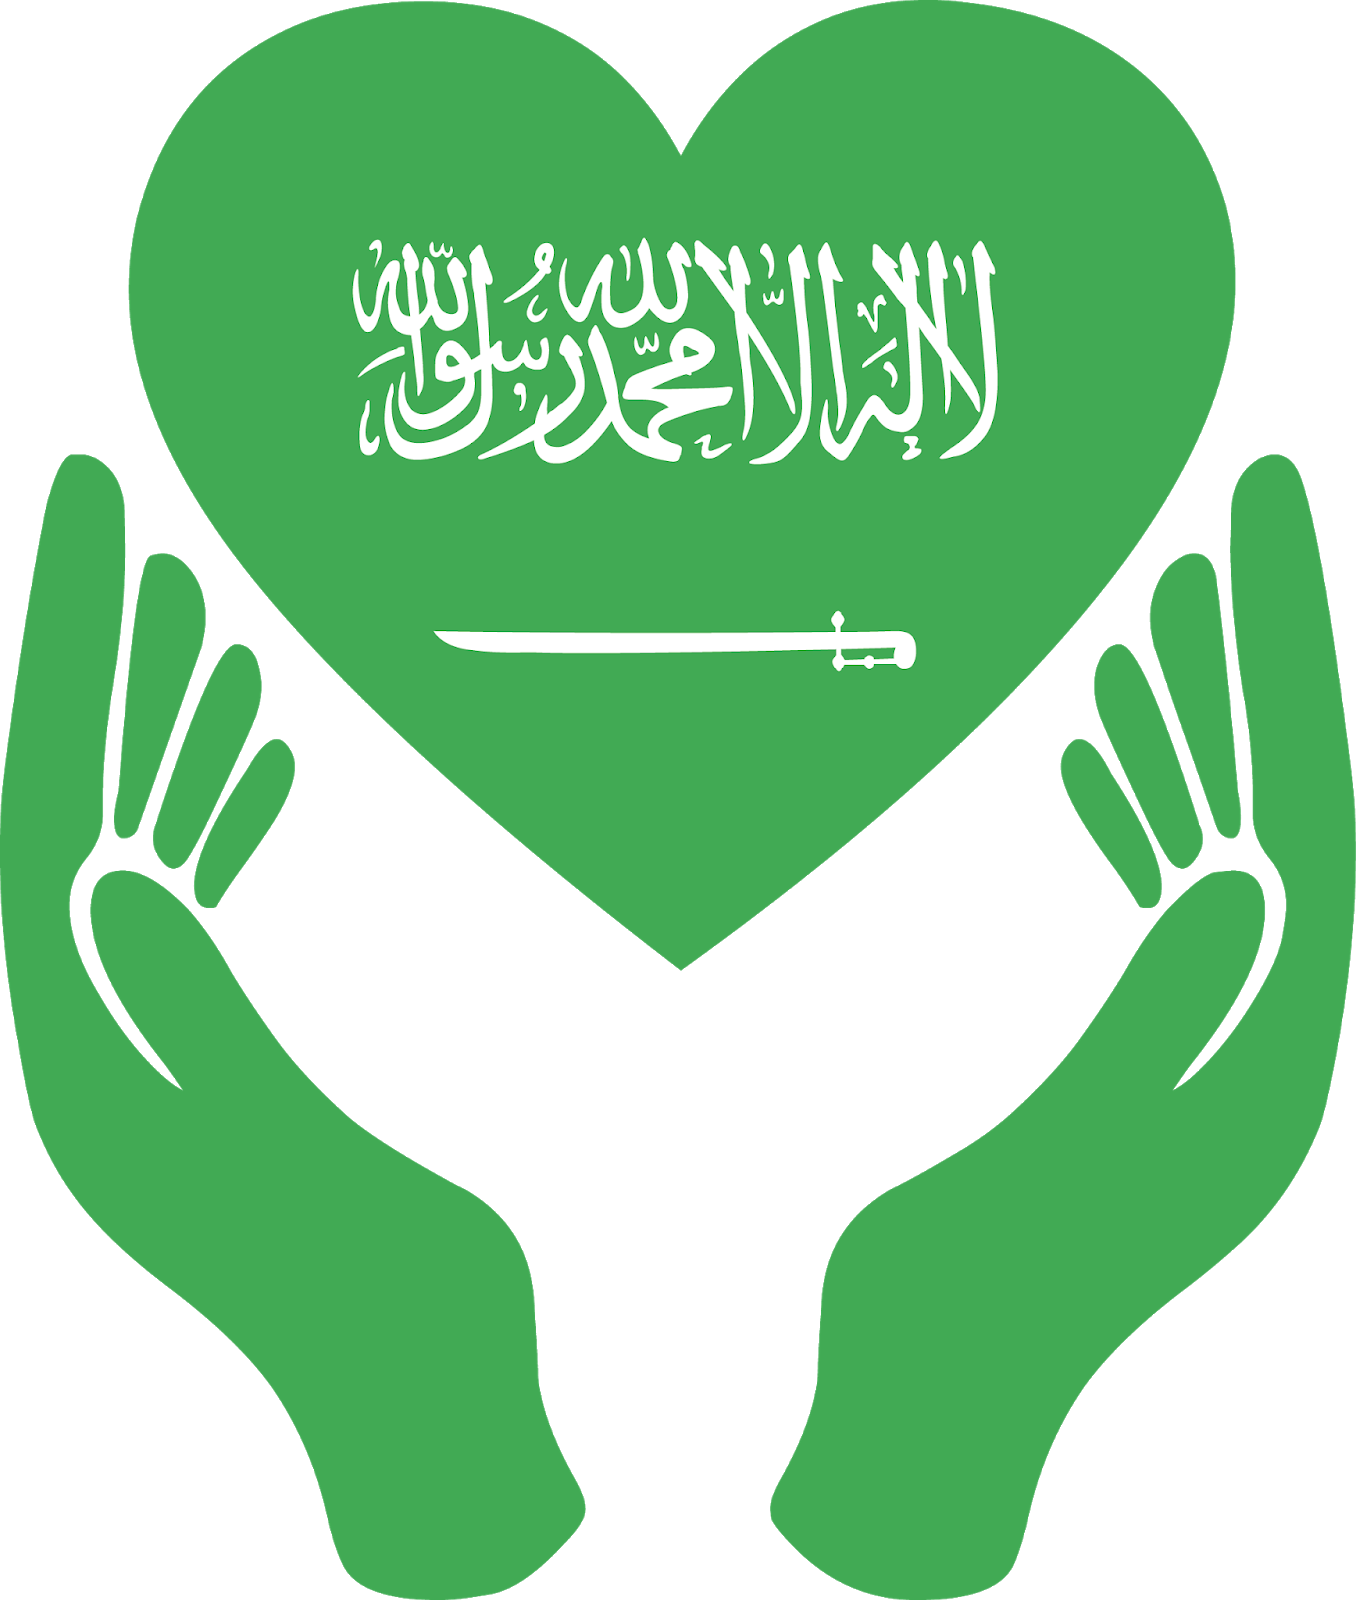 تصميم علم السعودية للتحميل , تحميل صورة العلم السعودي الصور